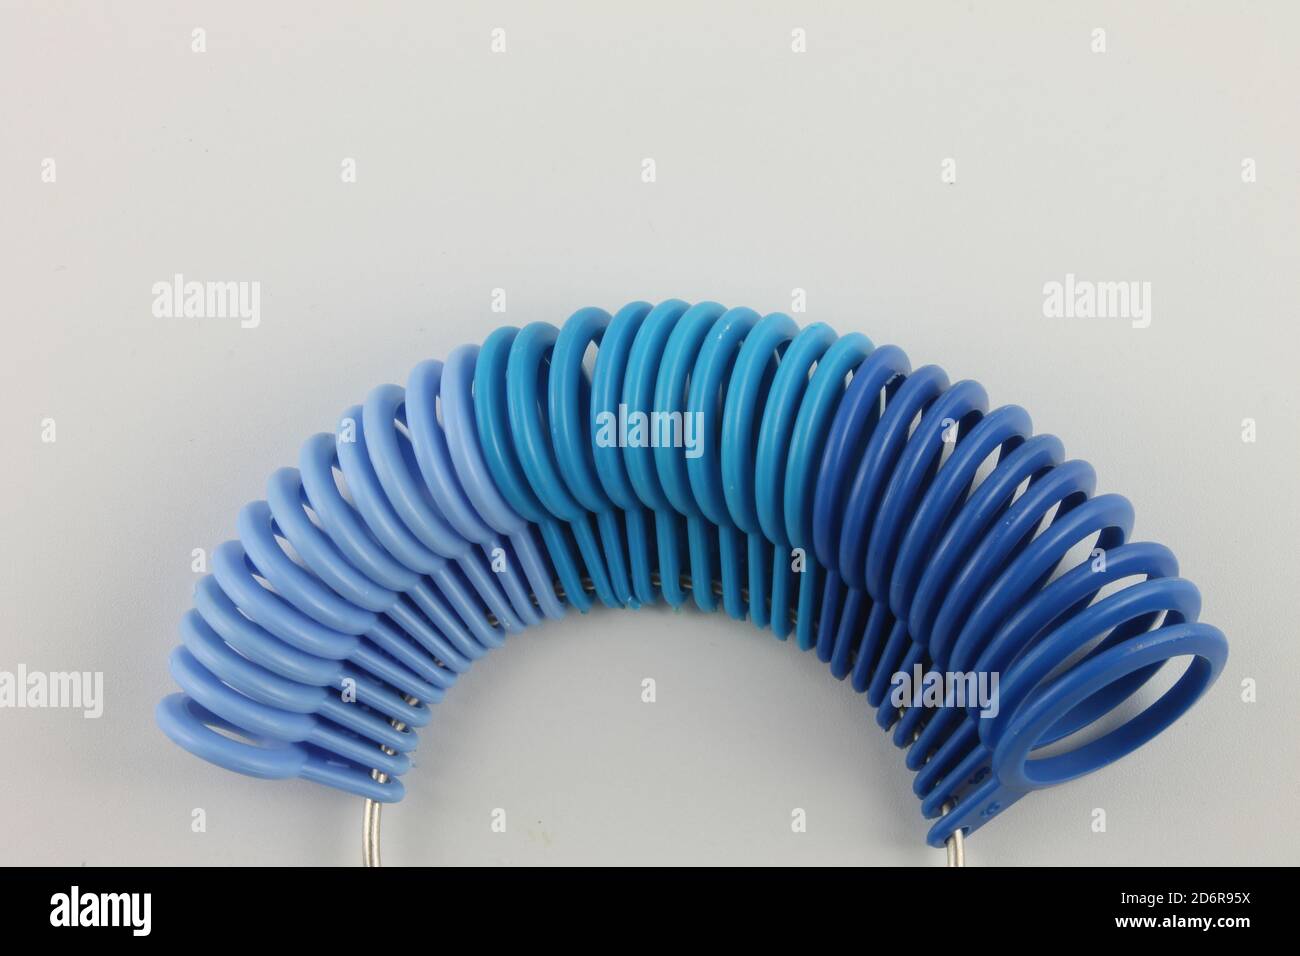 Ringgröße in Blautönen, isoliert auf weißem Hintergrund Stockfoto